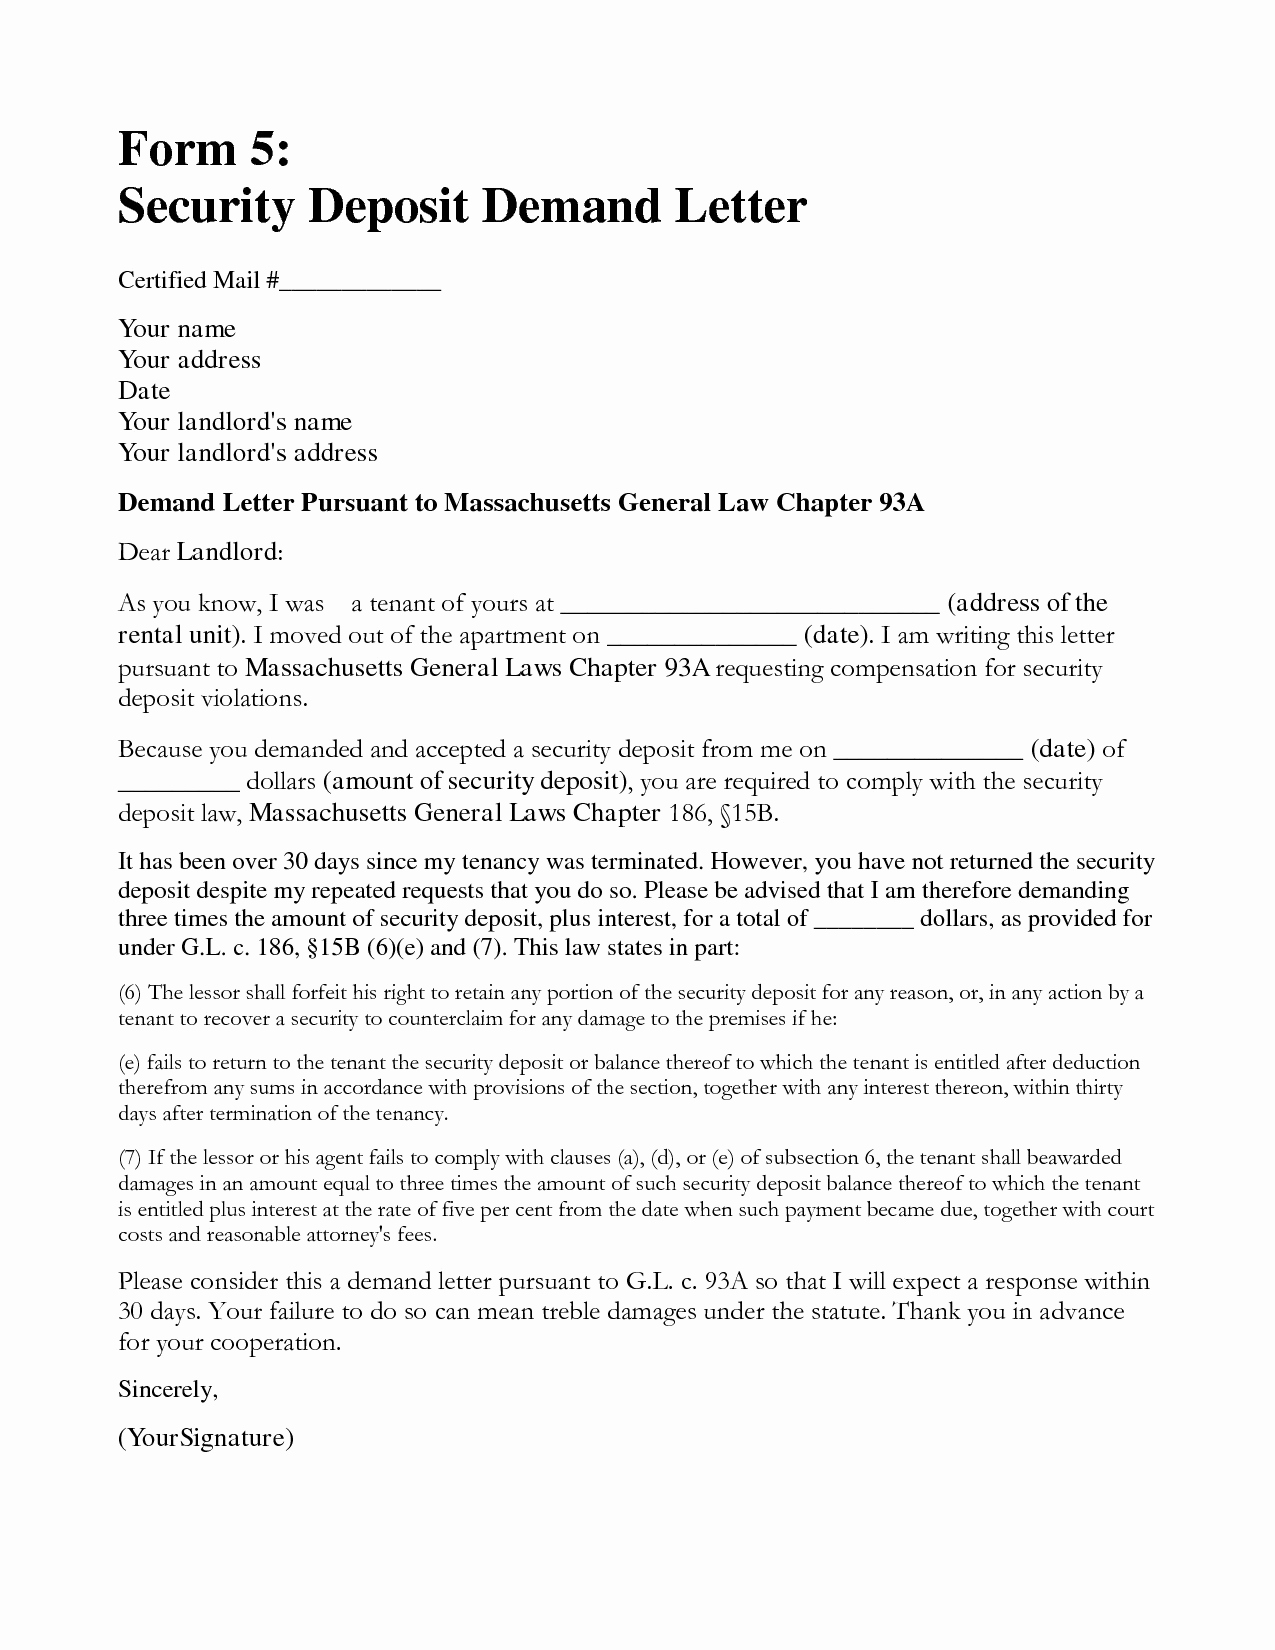 Sample Letter to Landlord Lovely Demand Letter to Landlord Template Samples